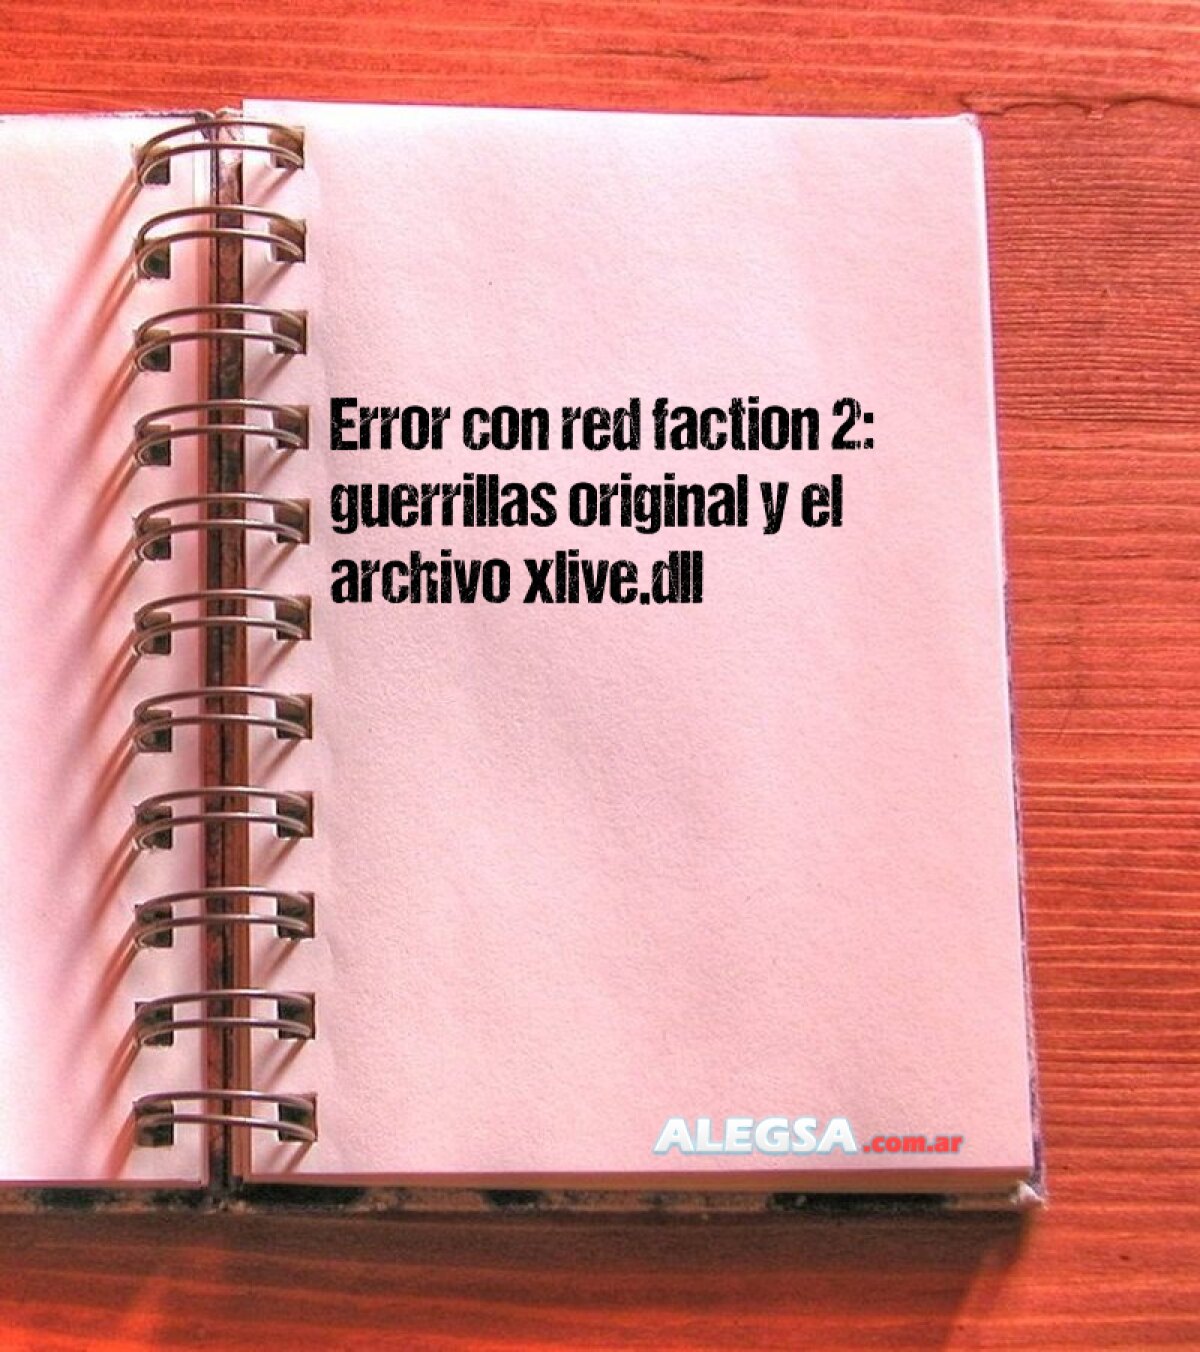 Error con red faction 2: guerrillas original y el archivo xlive.dll